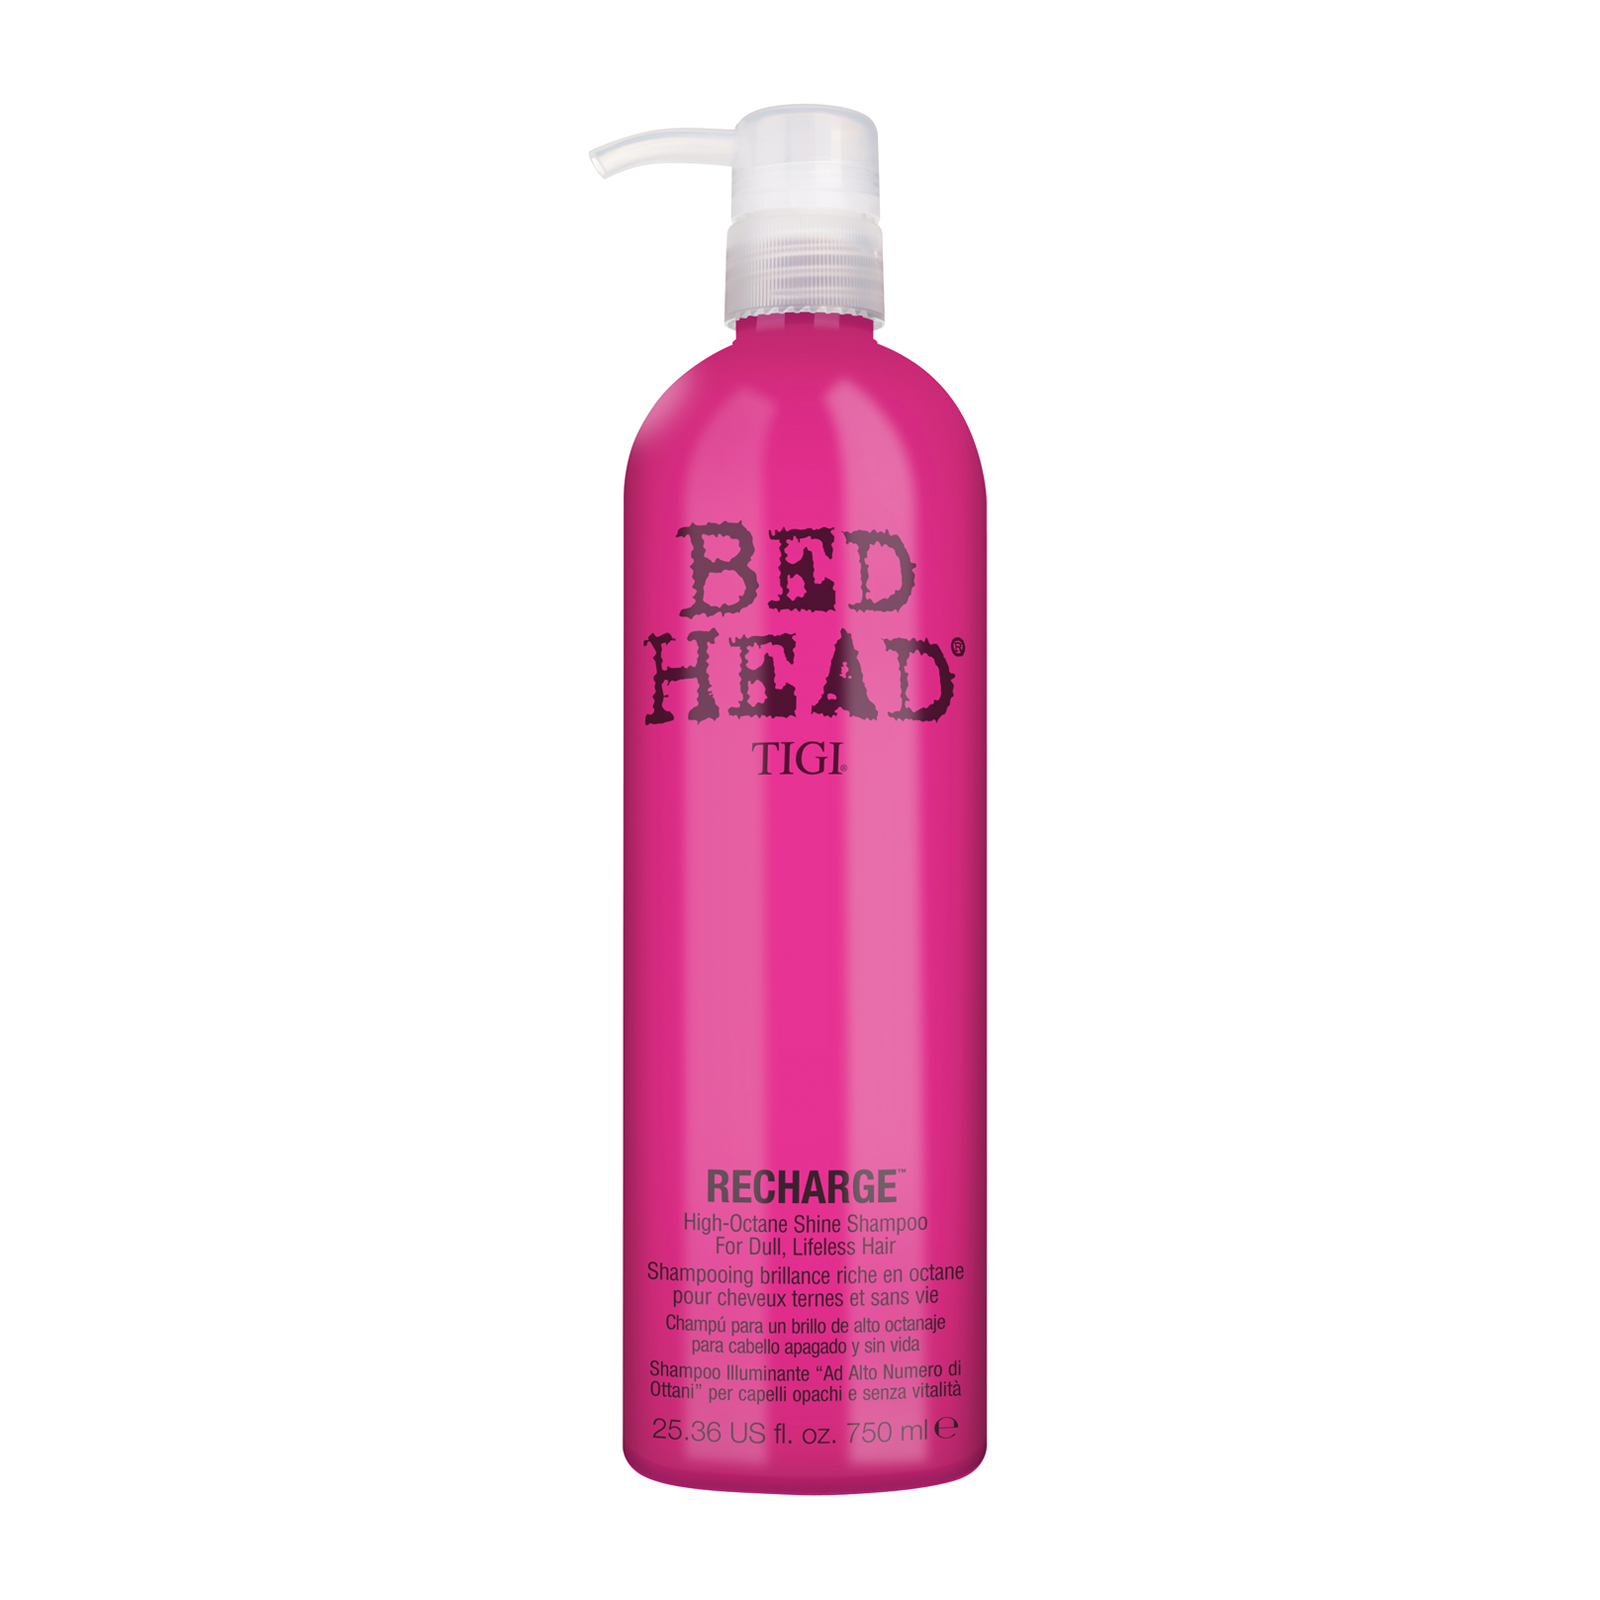 TIGI Bed Head Recharge Shampoo 750ml - feelunique.com